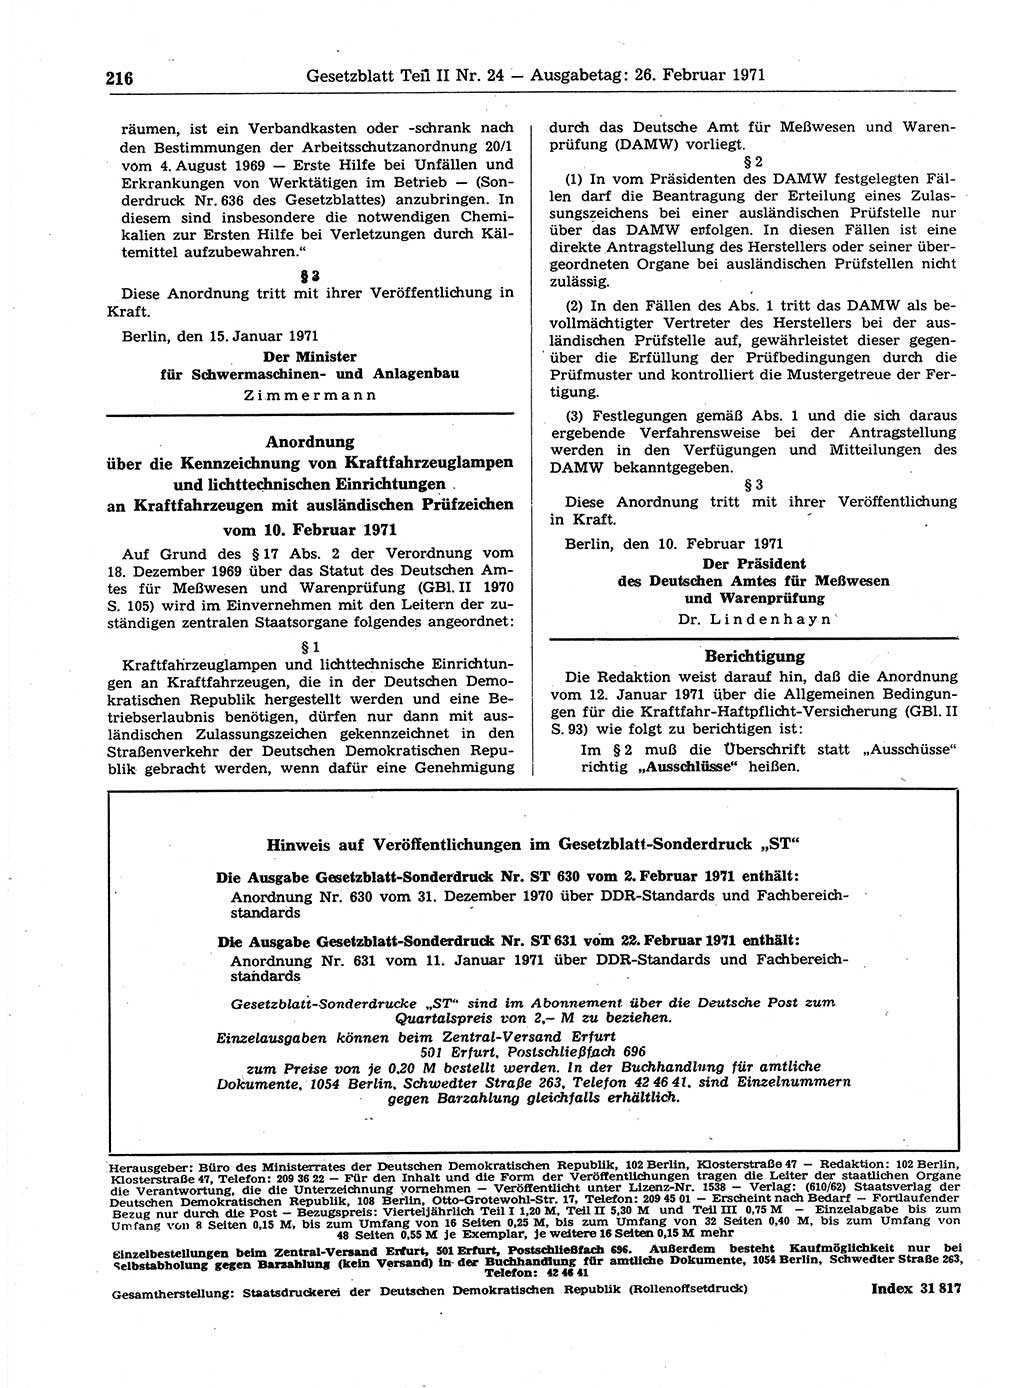 Gesetzblatt (GBl.) der Deutschen Demokratischen Republik (DDR) Teil ⅠⅠ 1971, Seite 216 (GBl. DDR ⅠⅠ 1971, S. 216)